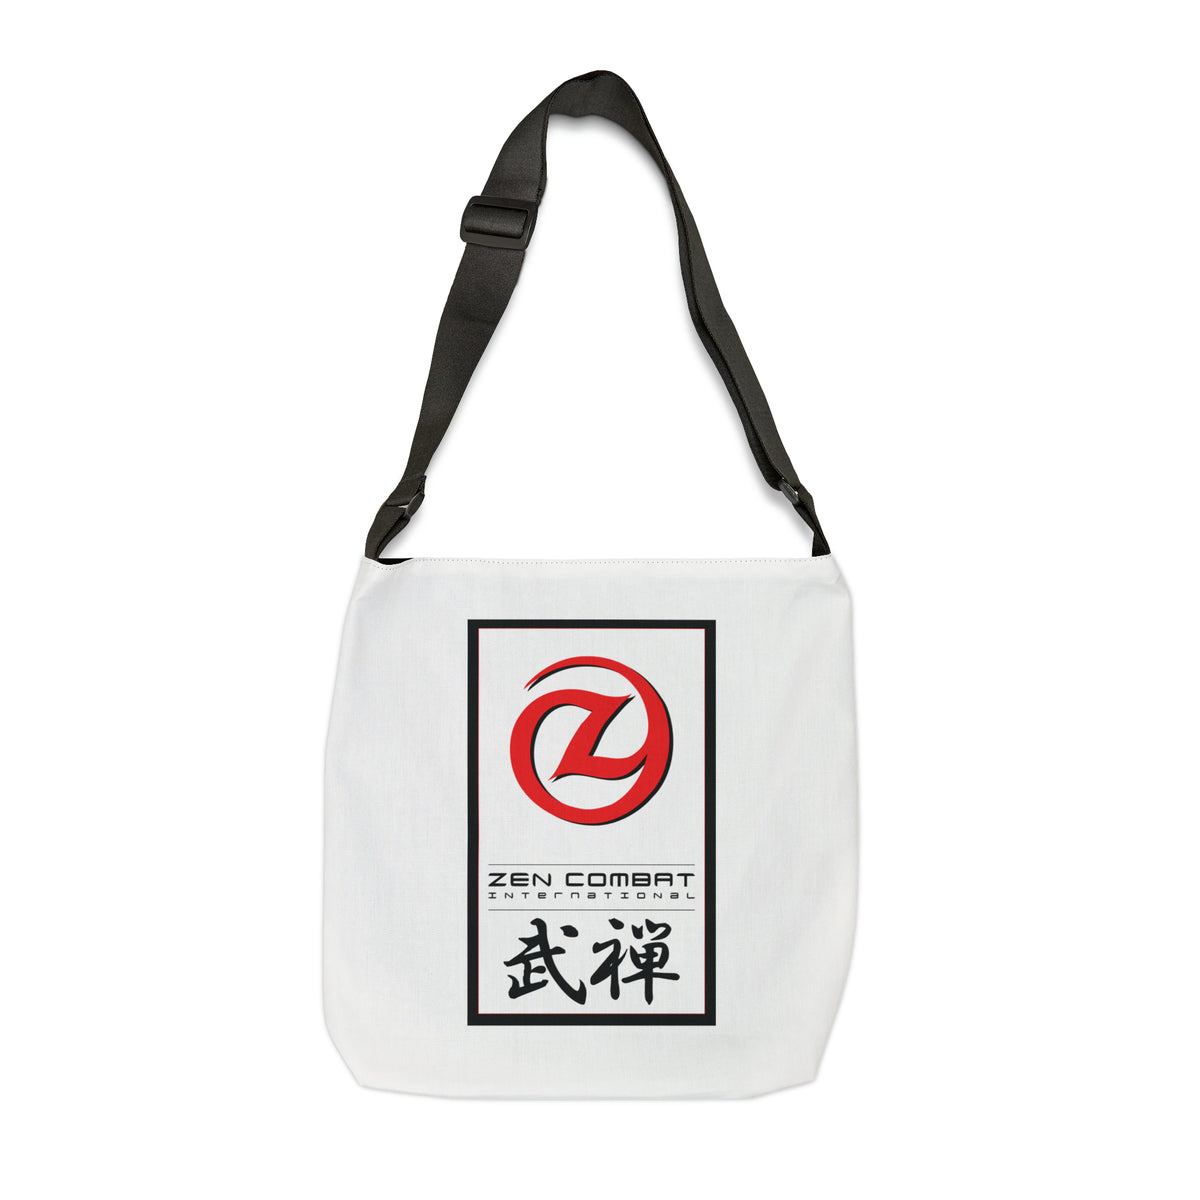 Zen Combat Adjustable Tote Bag - White